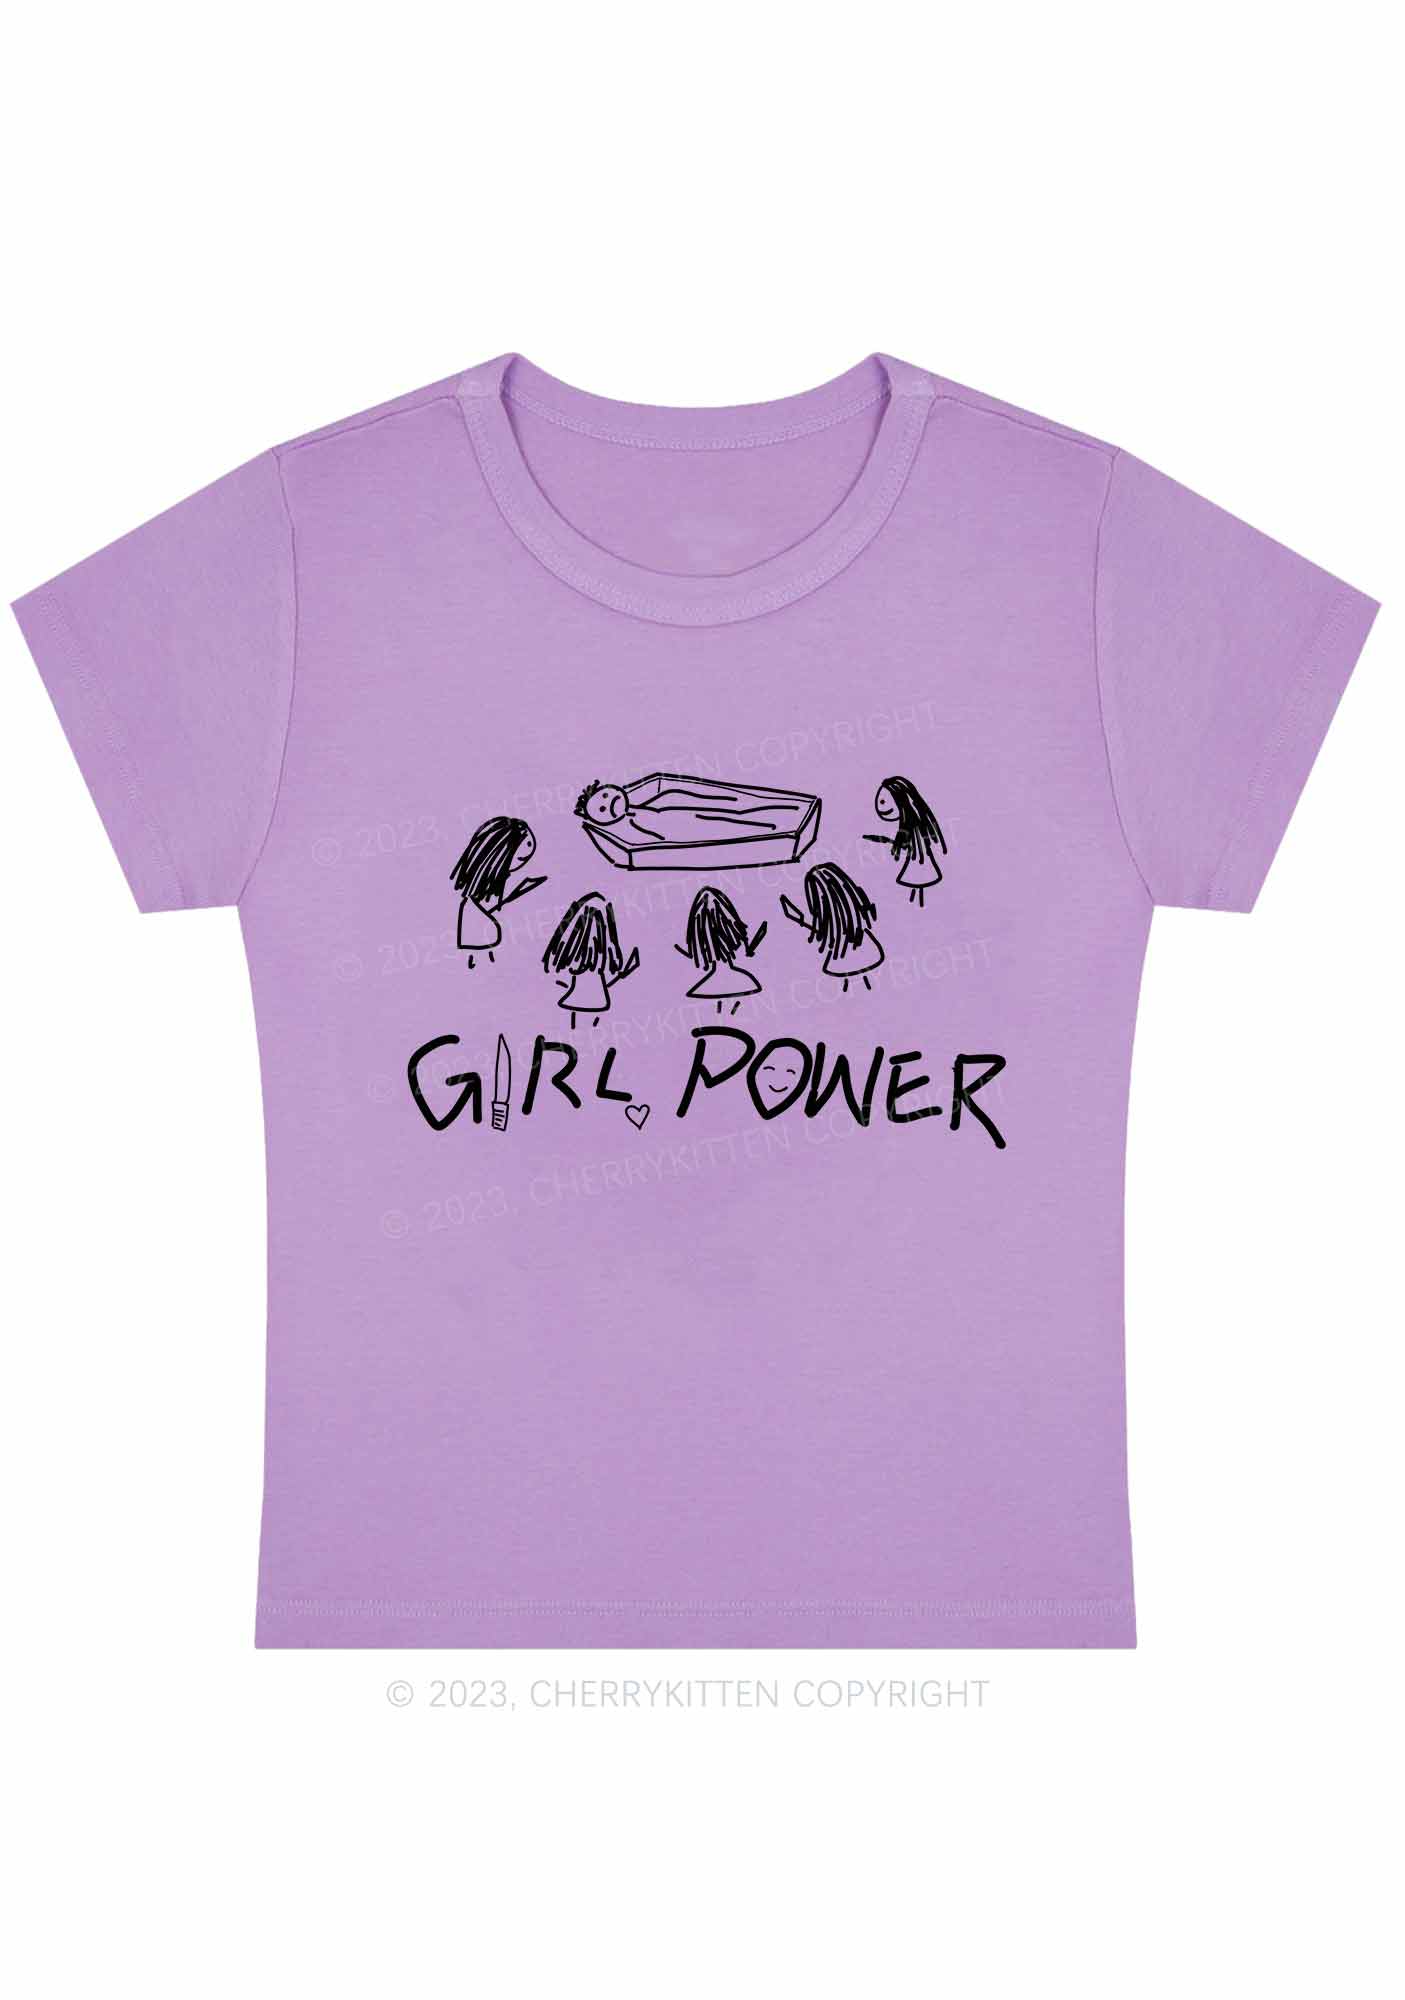 Girls Power Y2K Baby Tee Cherrykitten